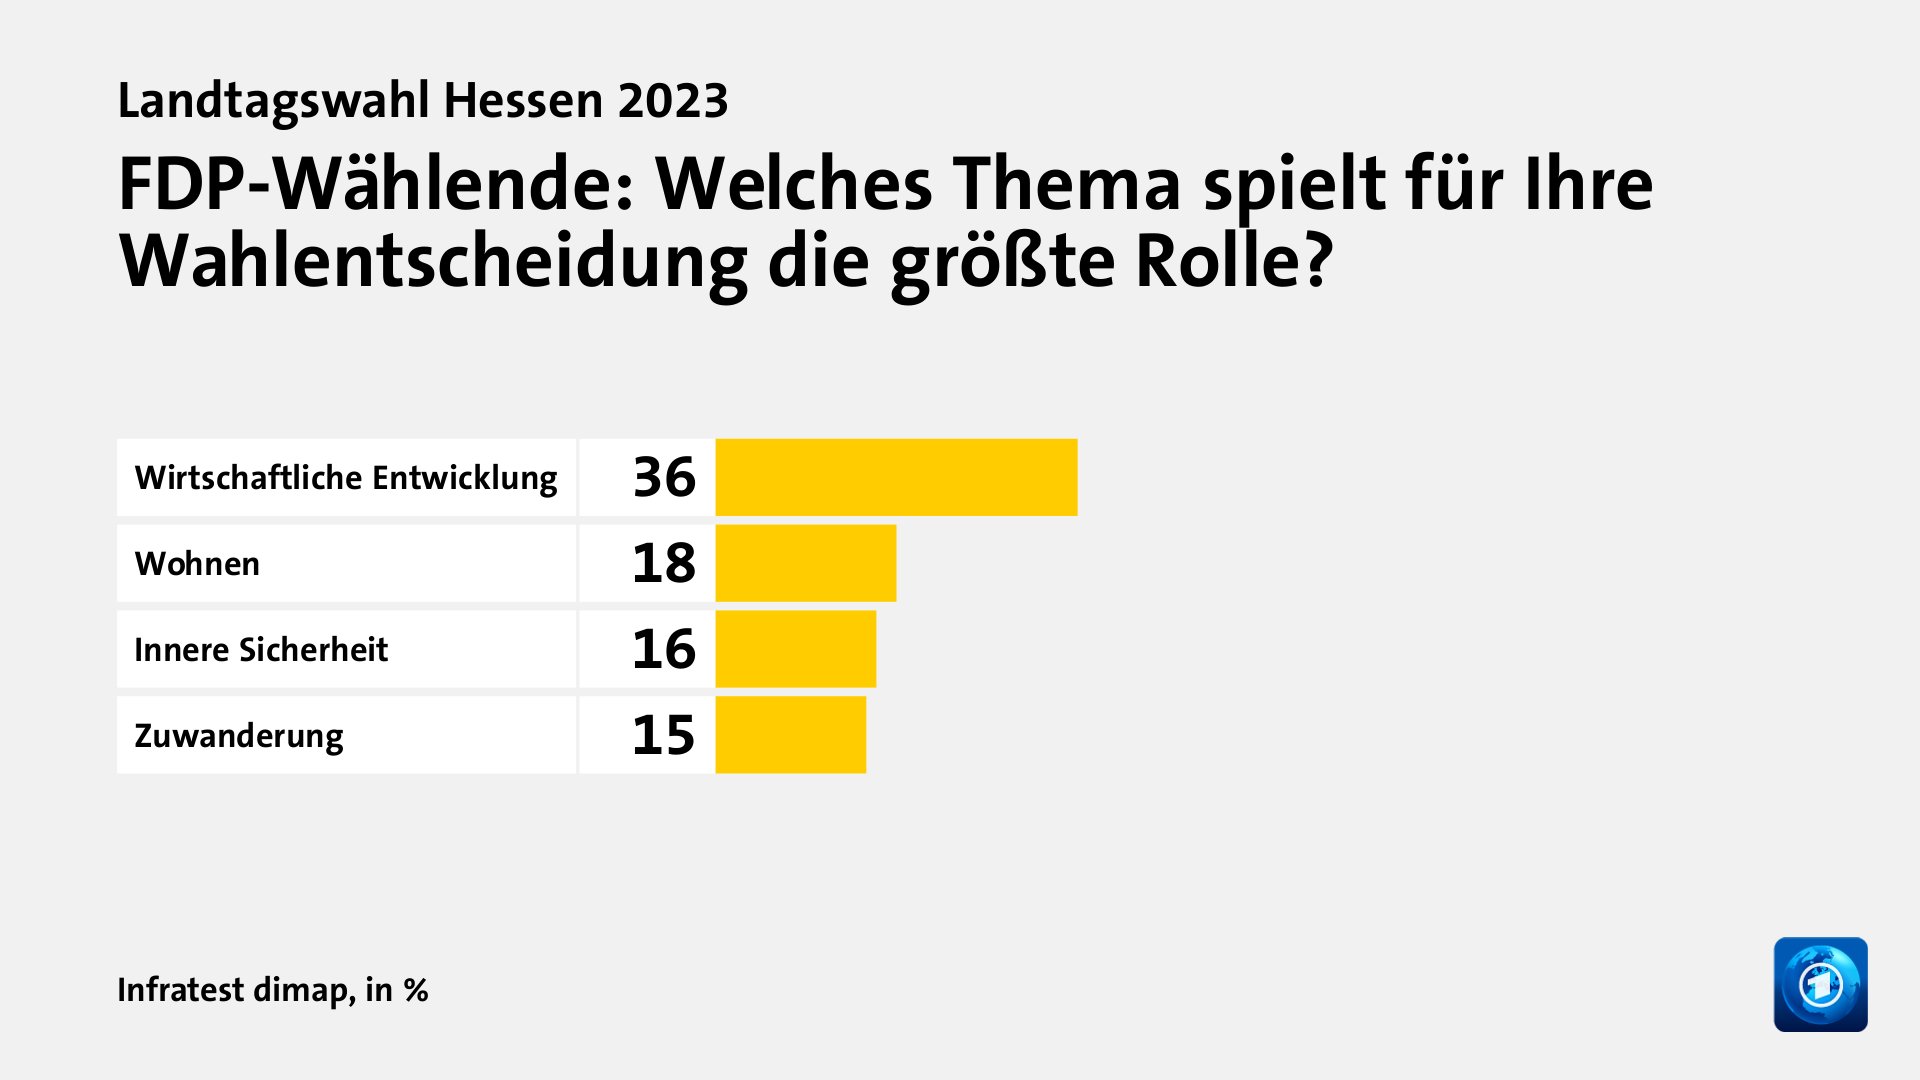 FDP-Wählende: Welches Thema spielt für Ihre Wahlentscheidung die größte Rolle?, in %: Wirtschaftliche Entwicklung 36, Wohnen 18, Innere Sicherheit 16, Zuwanderung 15, Quelle: Infratest dimap